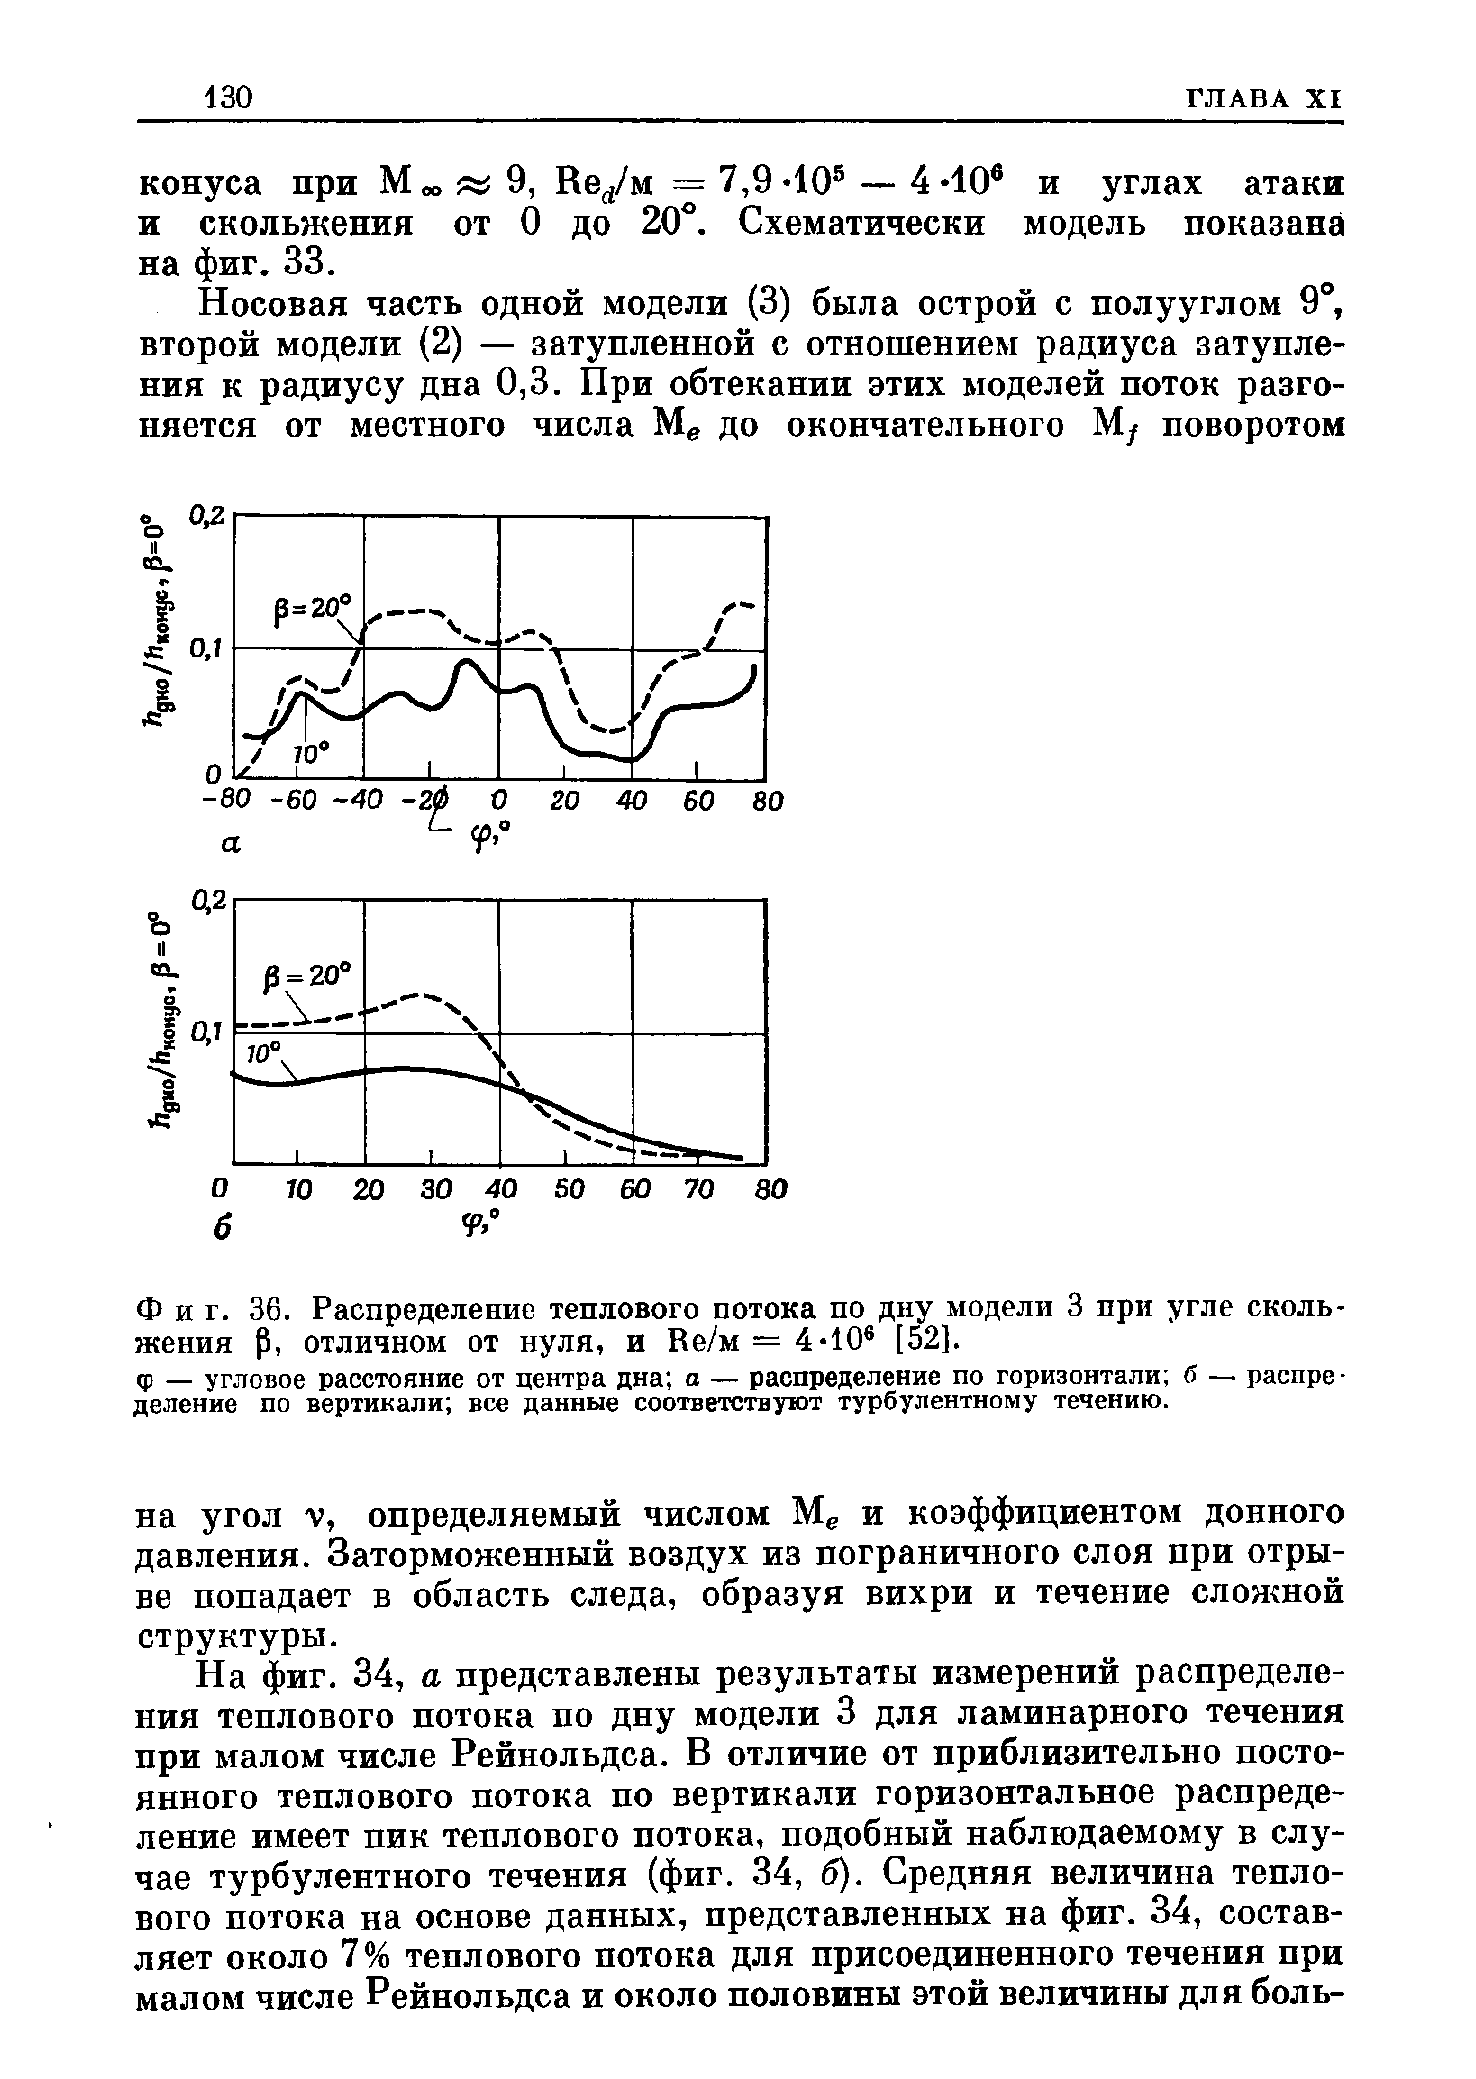 Фиг. 36. Распределение теплового потока по дну модели 3 при угле скольжения р, отличном от нуля, и Ве/м = 4-10 [52].
